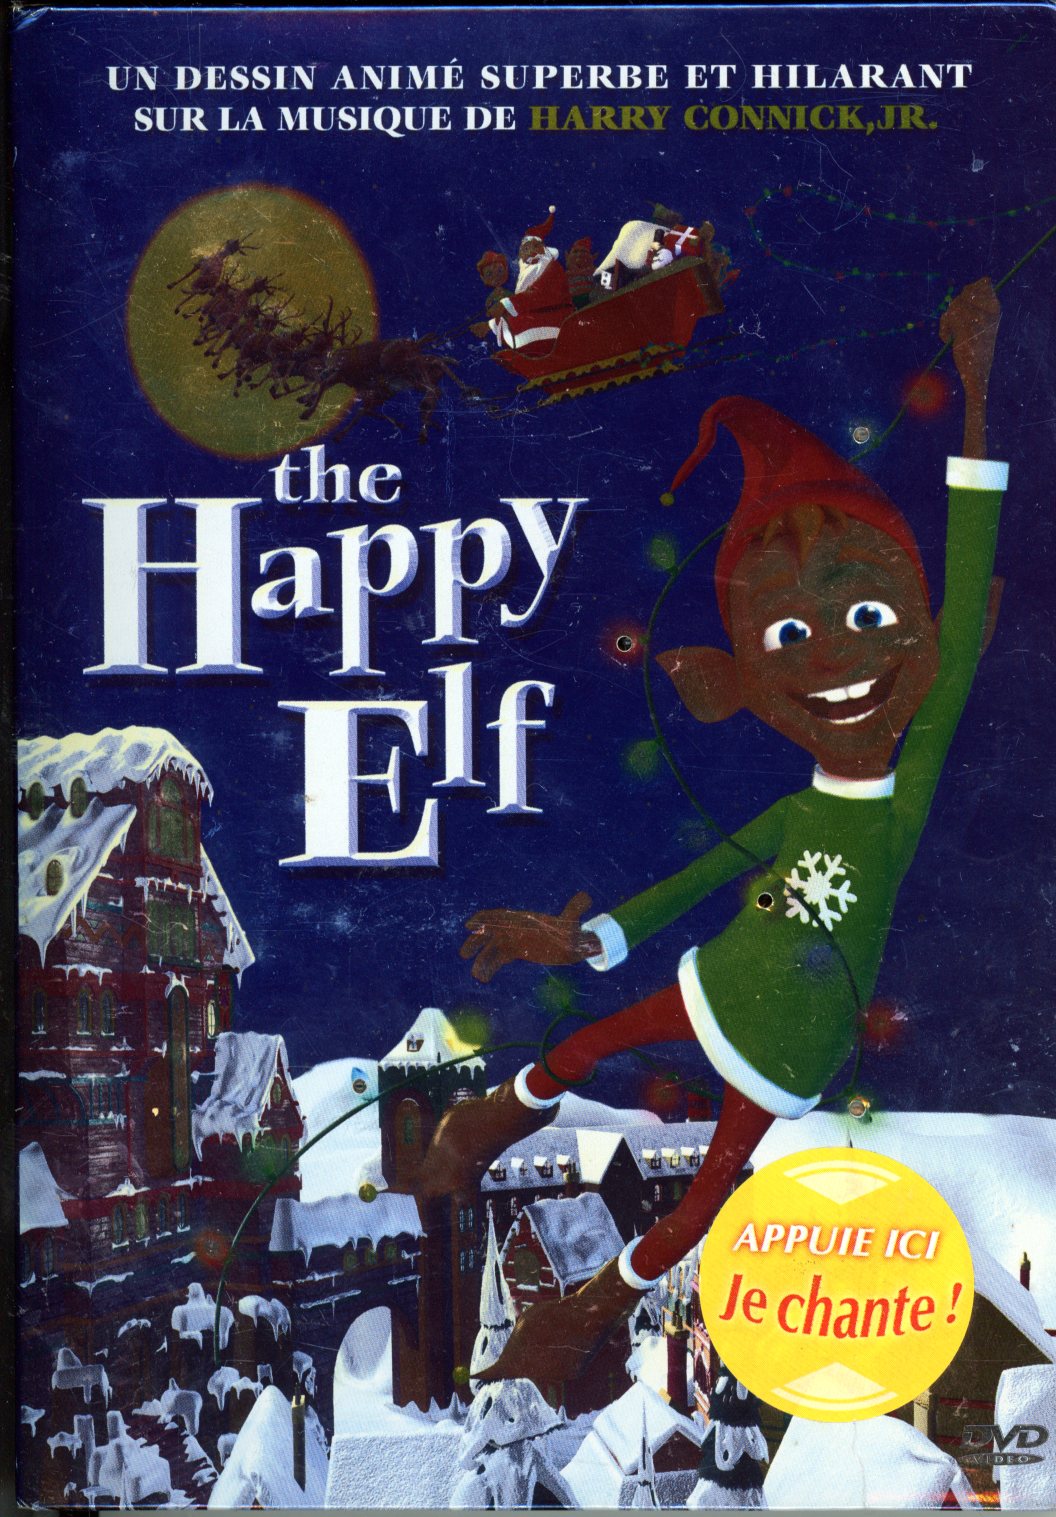 THE HAPPY ELF DVD  3530941025956